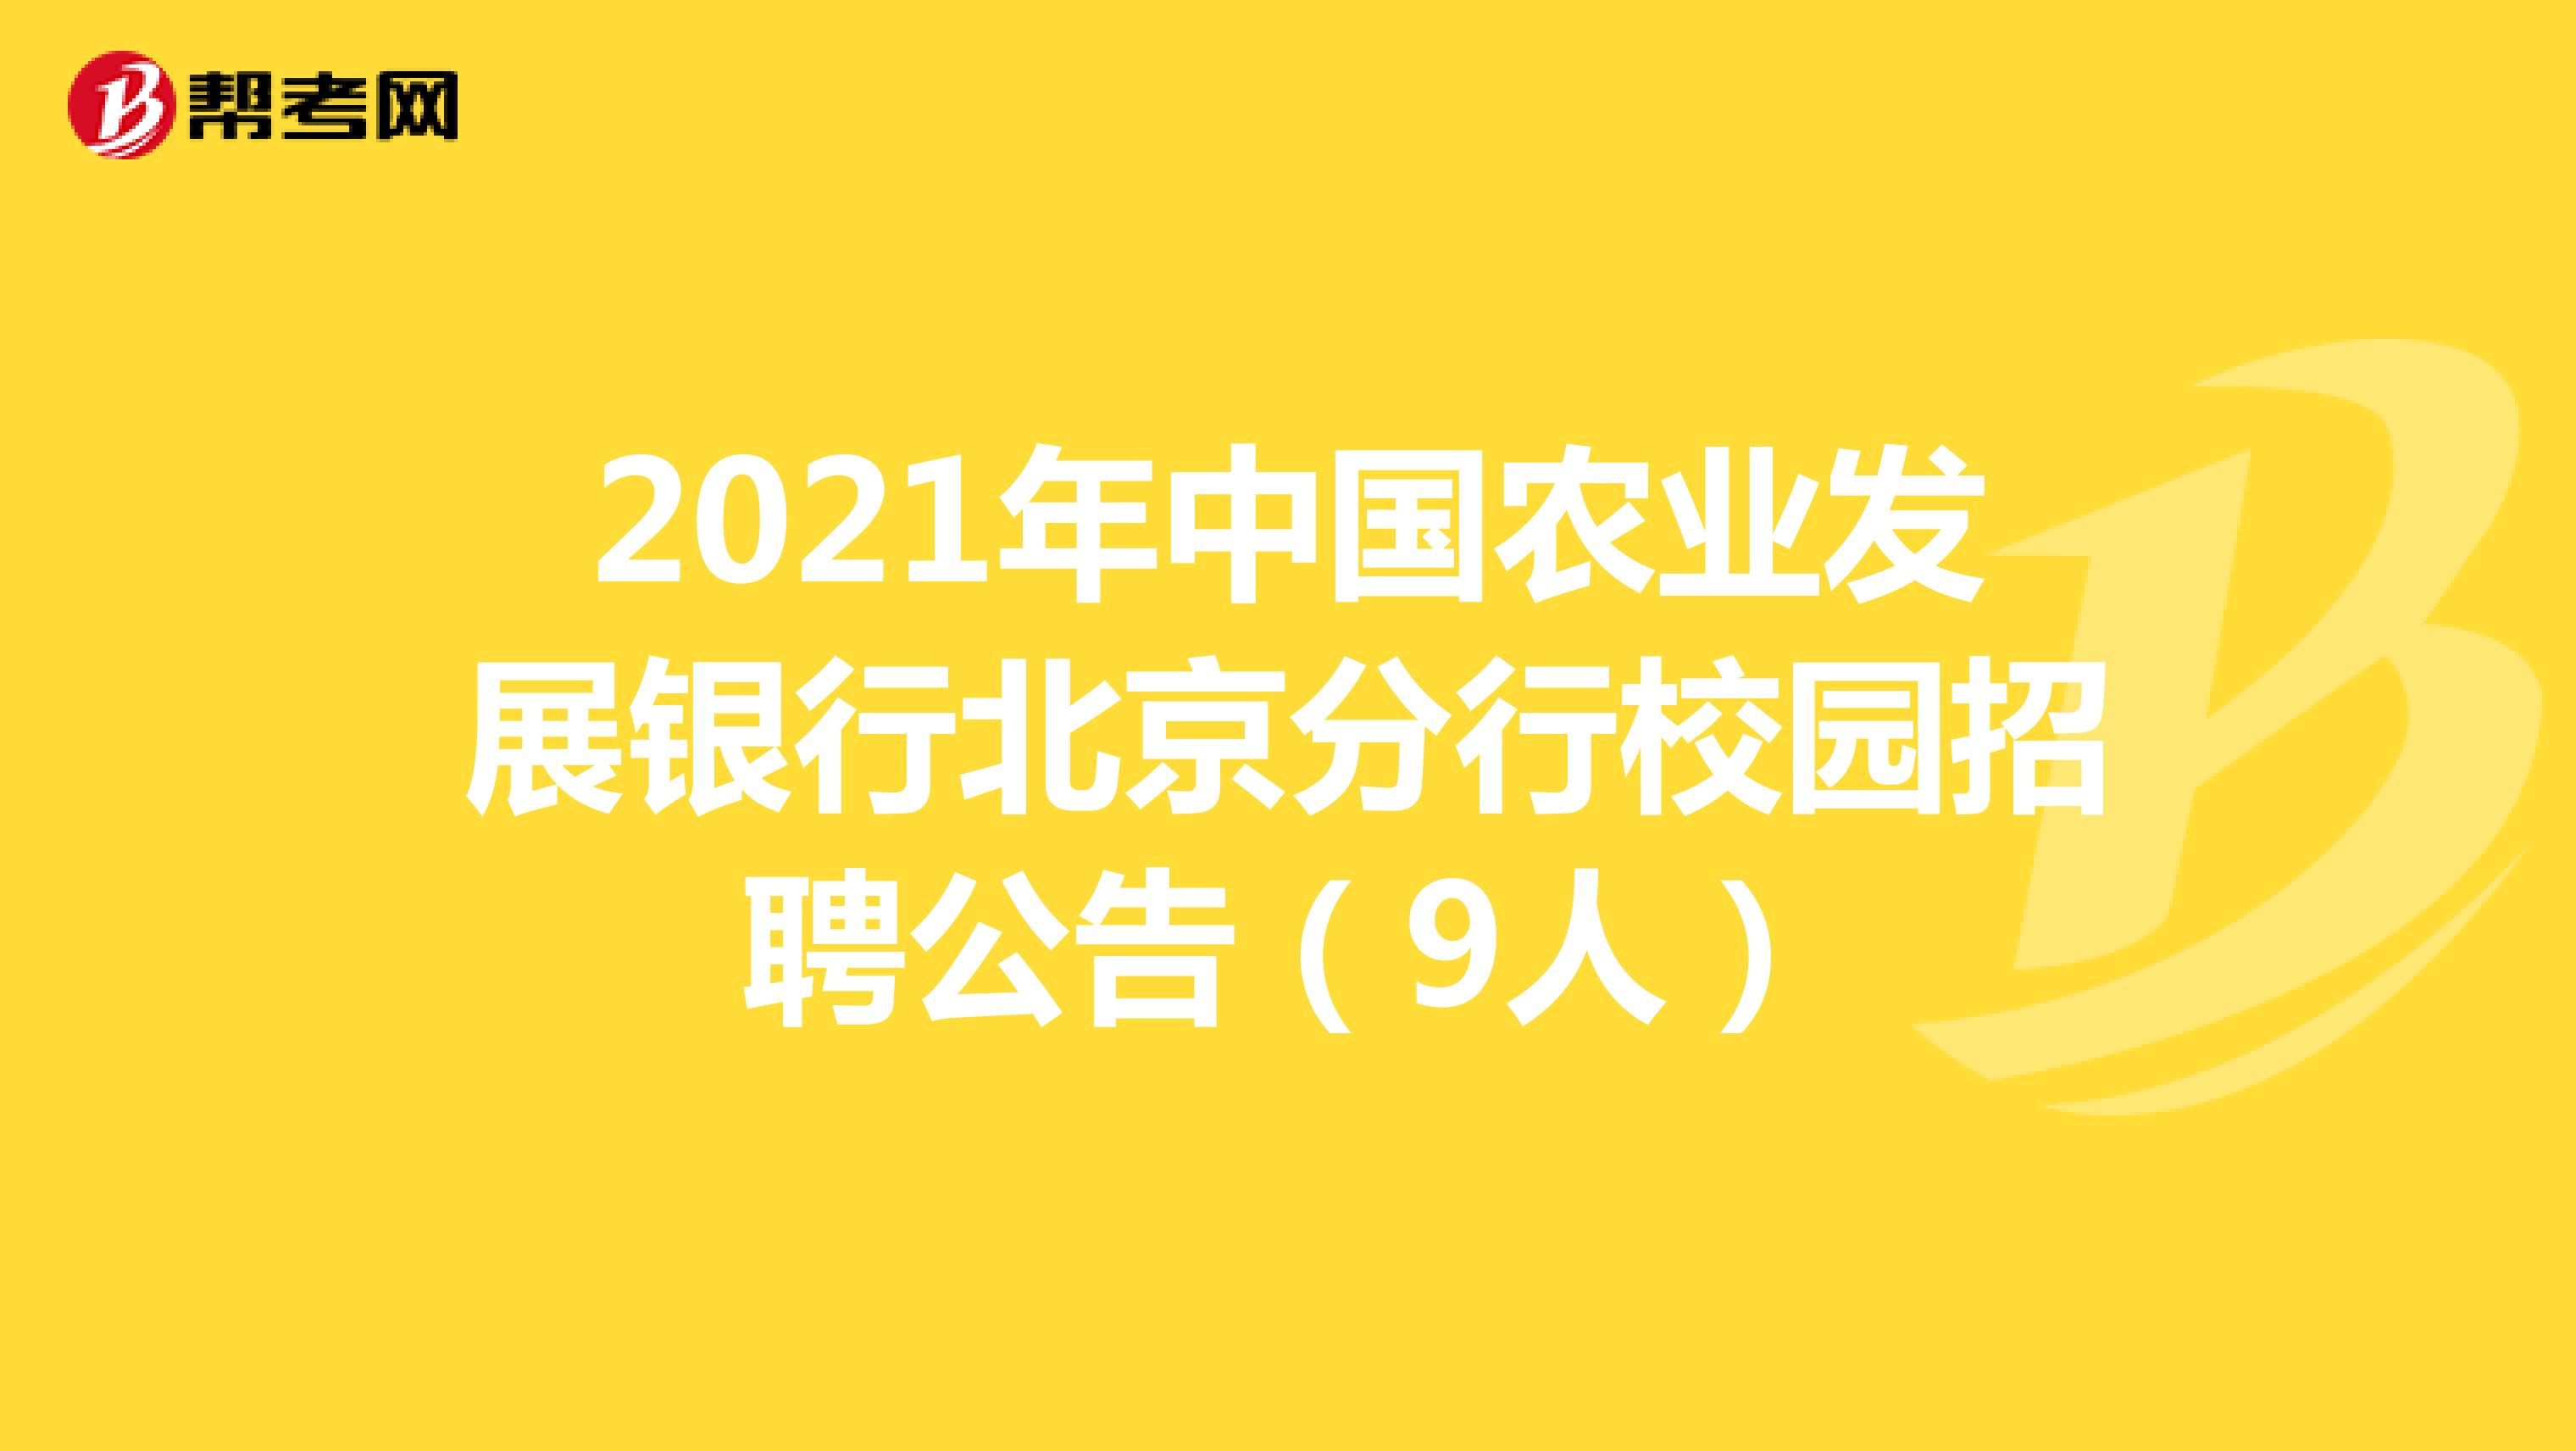 2021年中国农业发展银行北京分行校园招聘公告（9人）